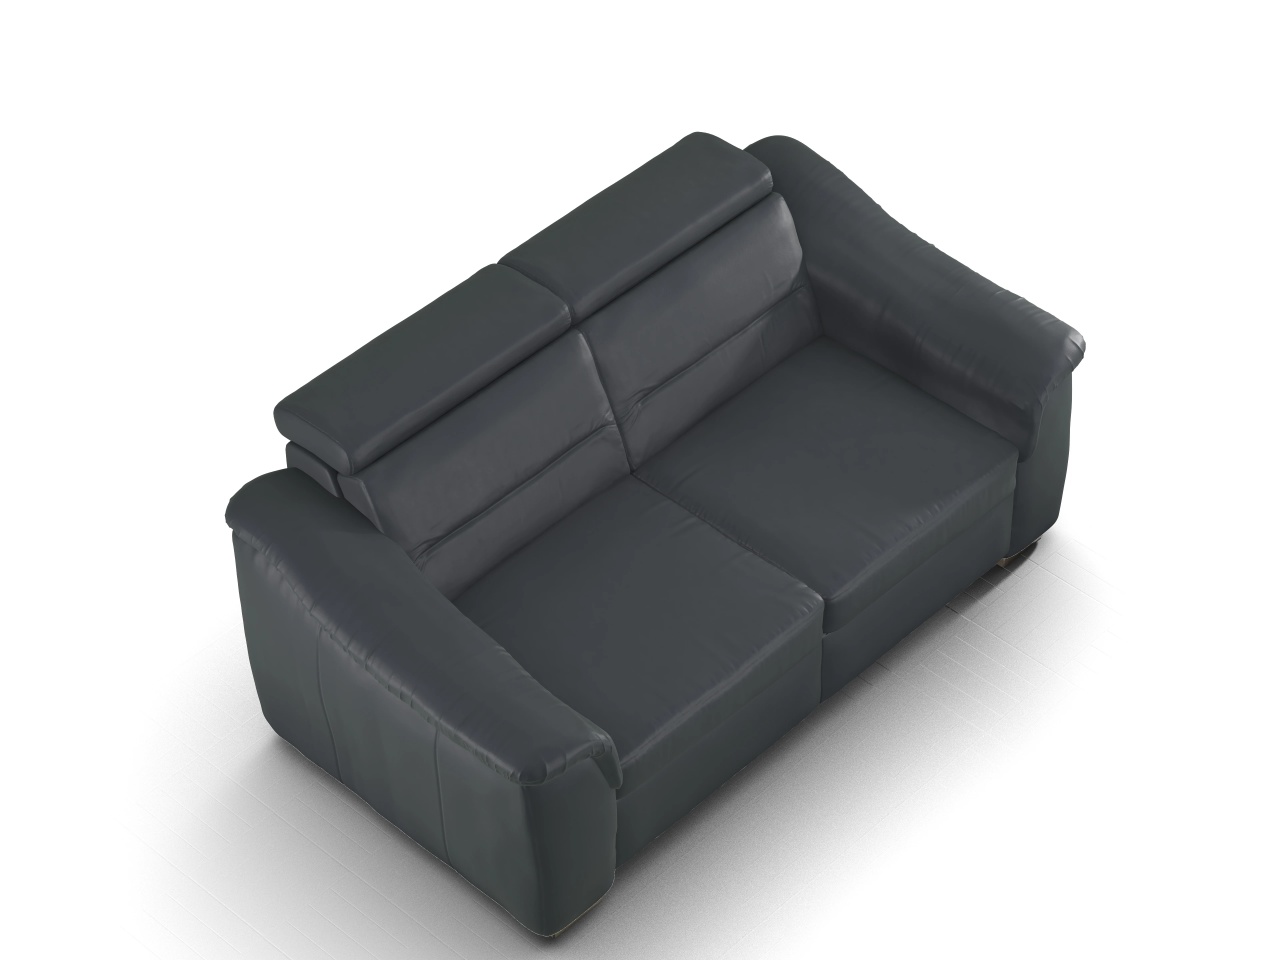 Sitz Concept select 1008 2,5 Sitzer Sofa